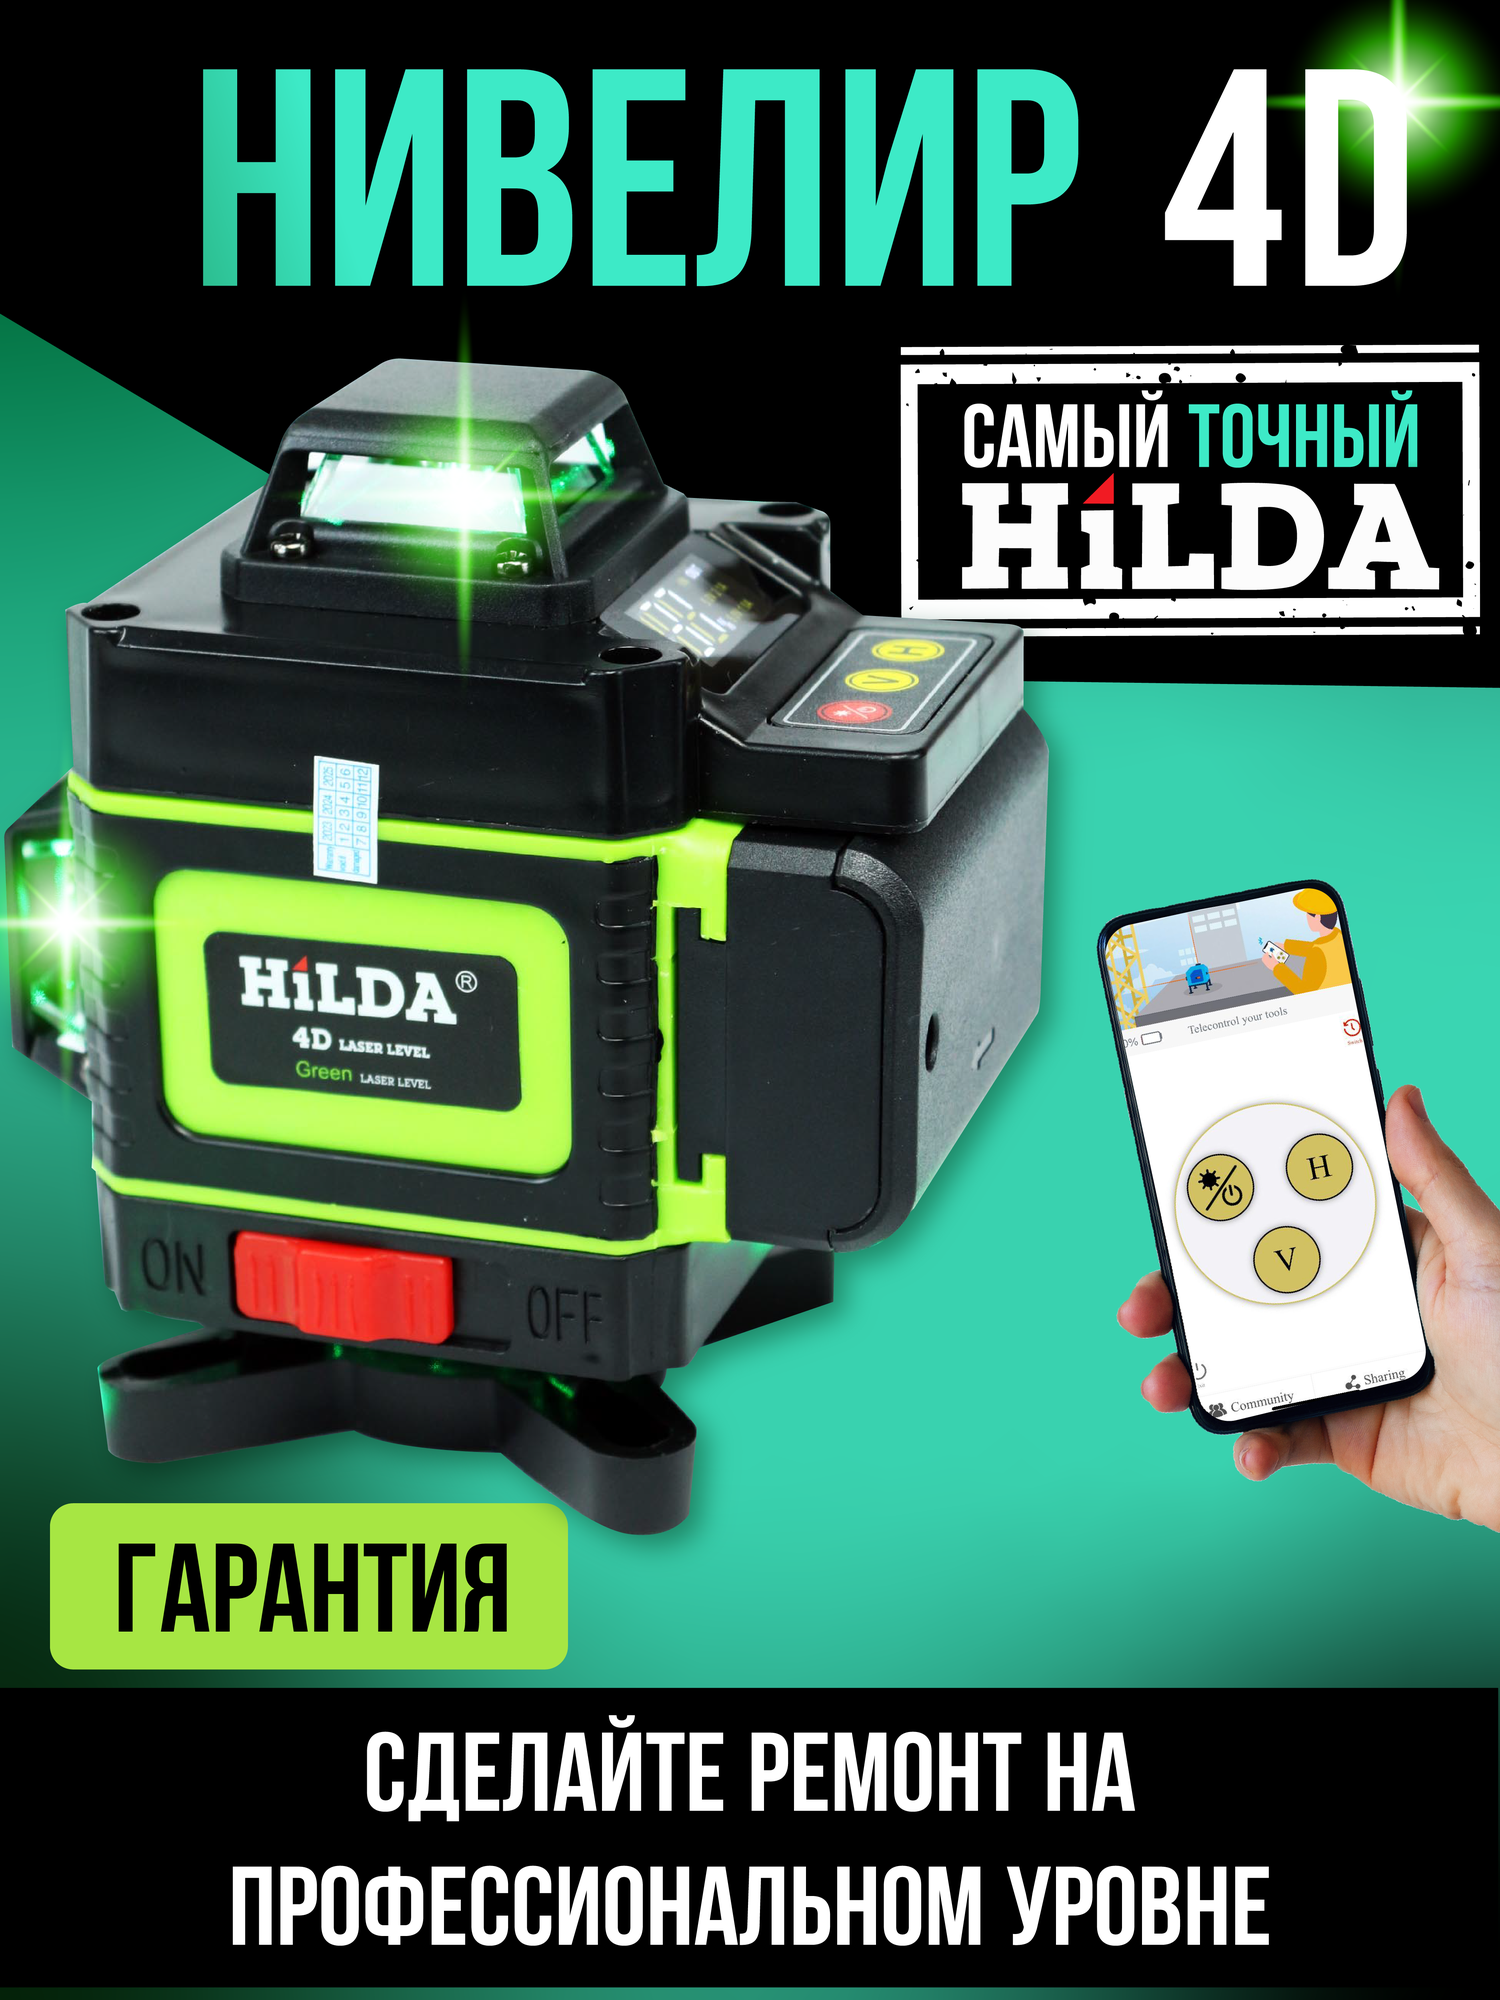 Лазерный уровень Hilda 4D 360 зеленый луч